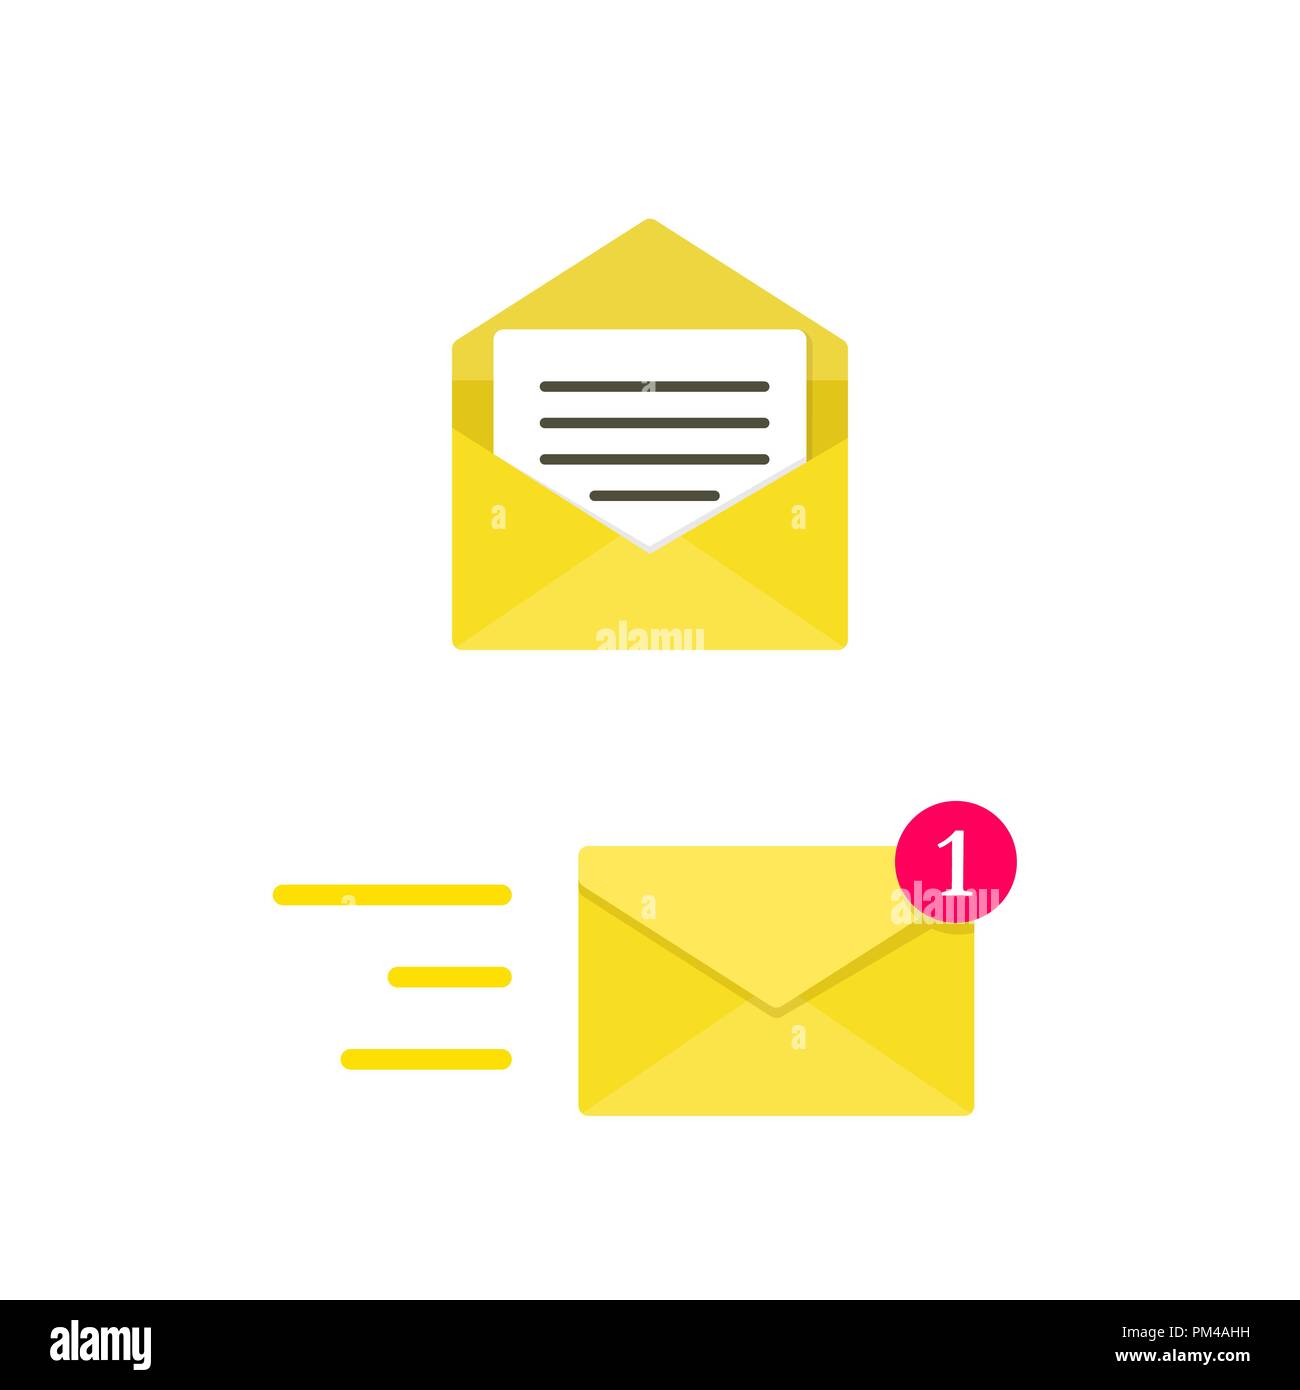 E-Umschlag Konzept. Digitale Post. Gelber Umschlag. Vector Illustration Stock Vektor